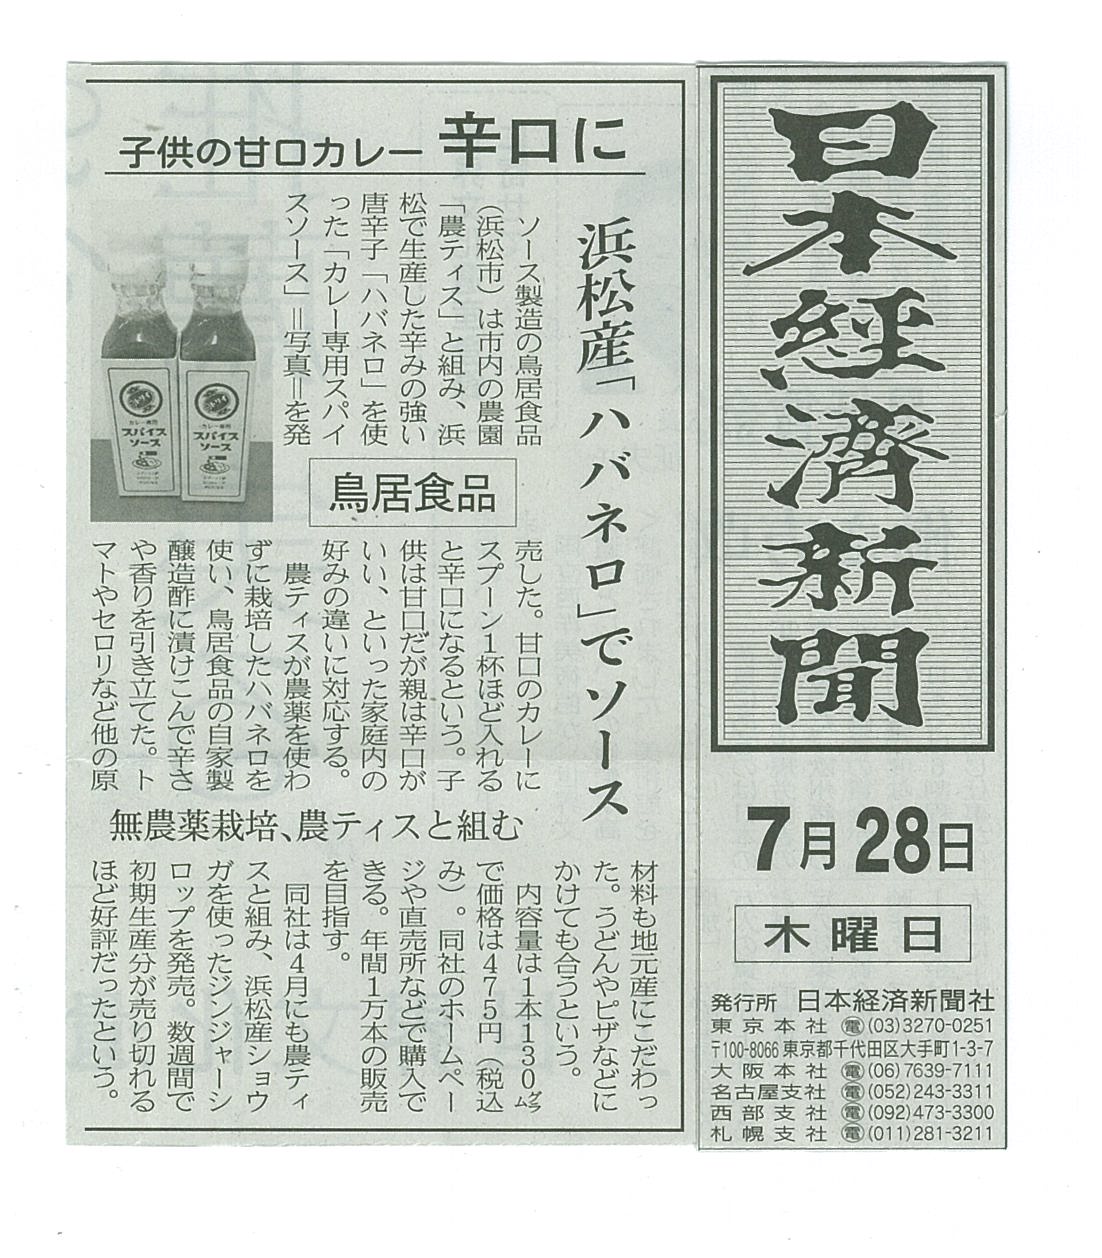 http://www.torii-sauce.jp/media/%E3%82%AB%E3%83%AC%E3%83%BC%E5%B0%82%E7%94%A8%E6%97%A5%E6%9C%AC%E7%B5%8C%E6%B8%88%E6%96%B0%E8%81%9E.jpg